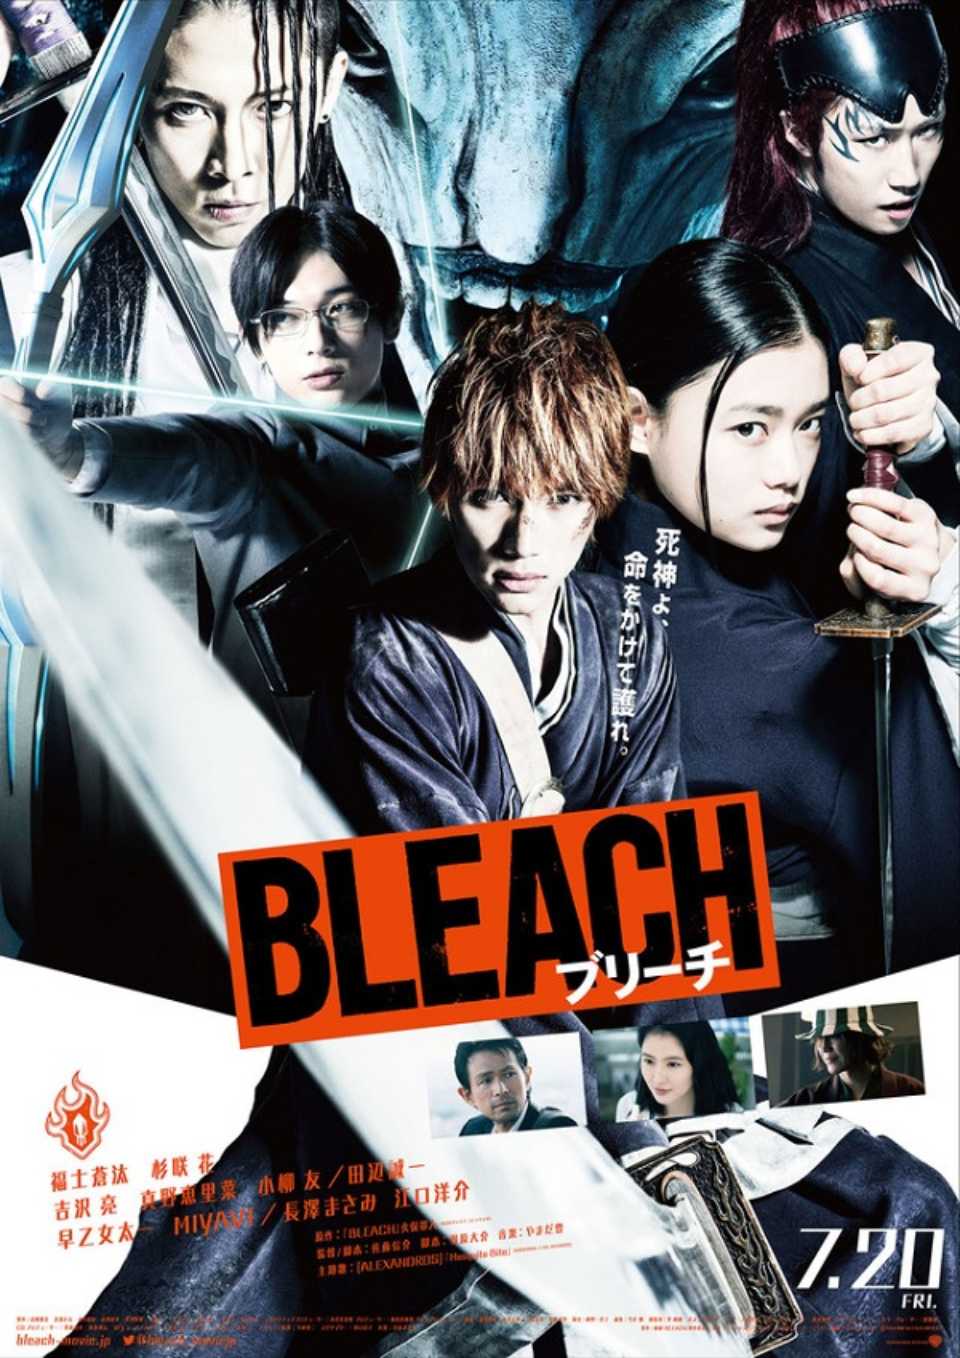 Mira el nuevo adelanto de la película live action de Bleach